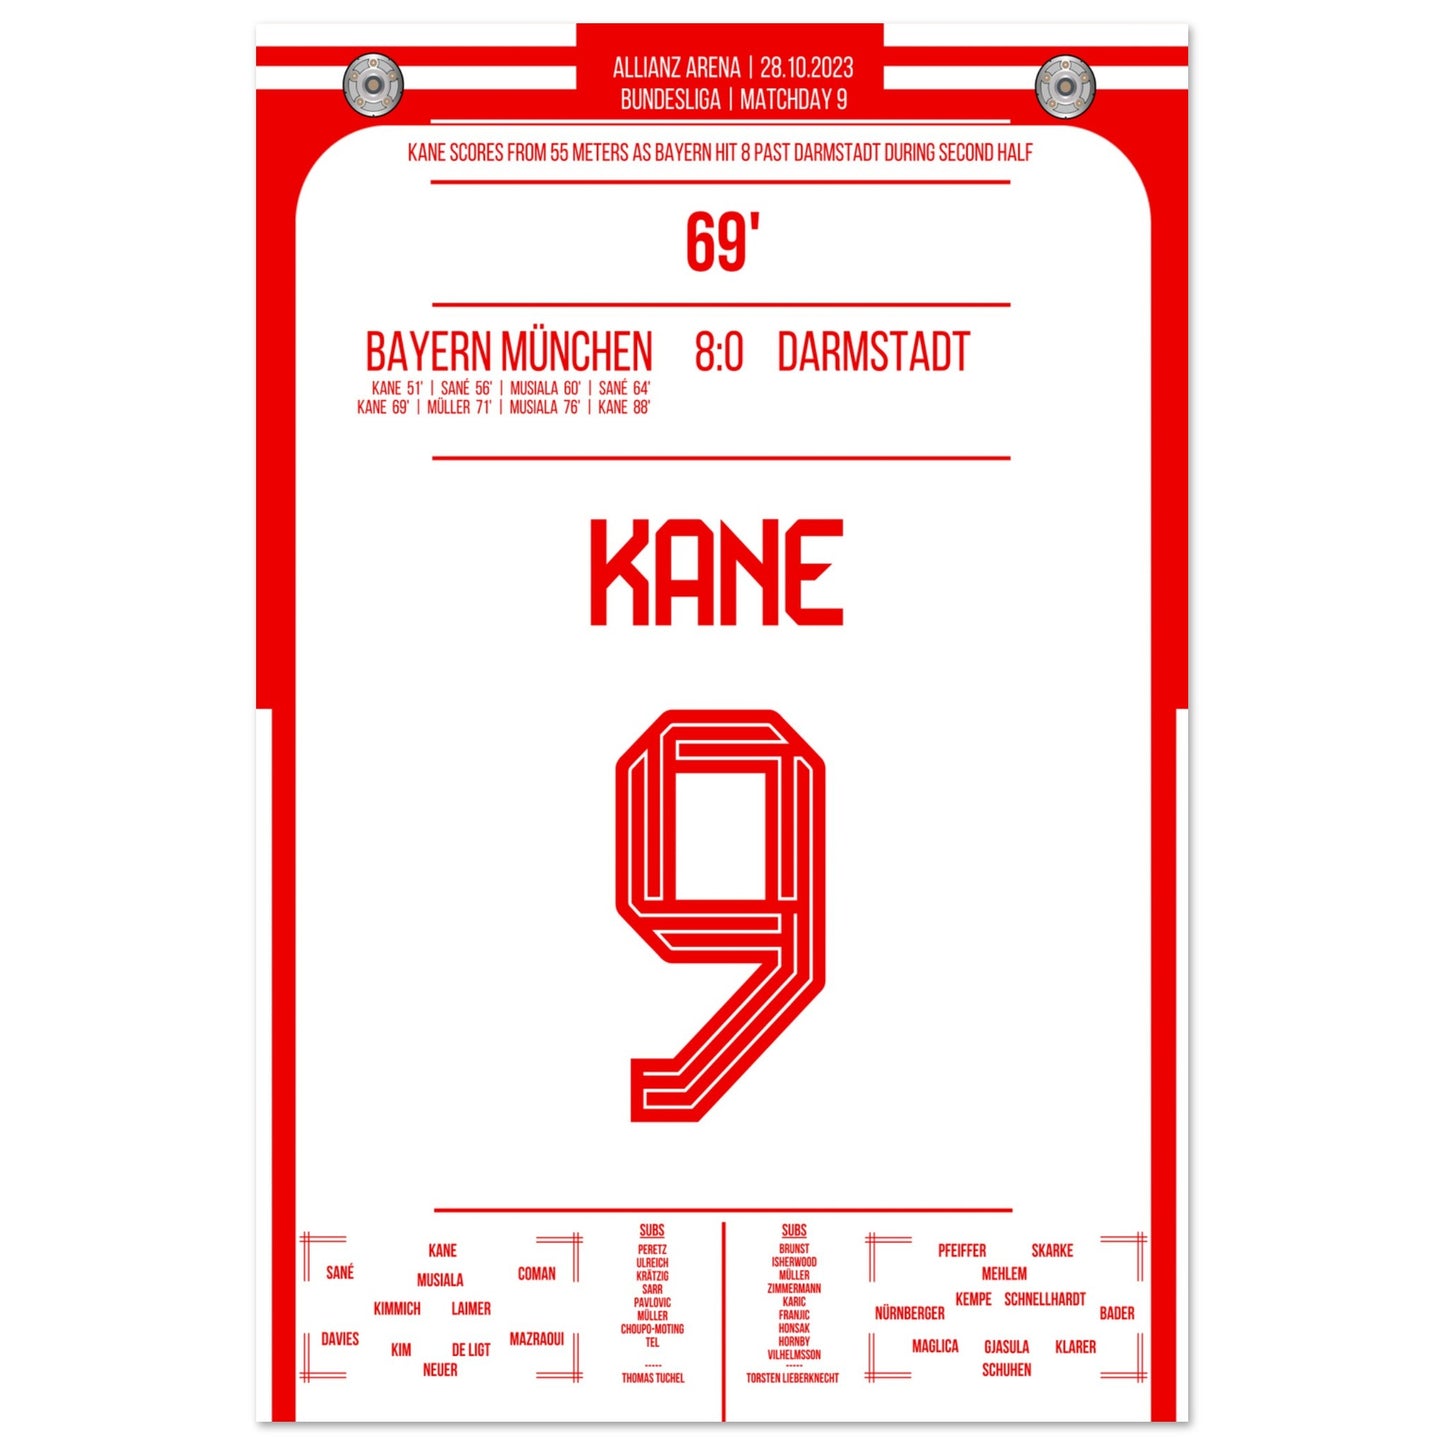 Kane's Traumtor aus 55 Metern bei 8-0 Sieg gegen Darmstadt 60x90-cm-24x36-Ohne-Rahmen